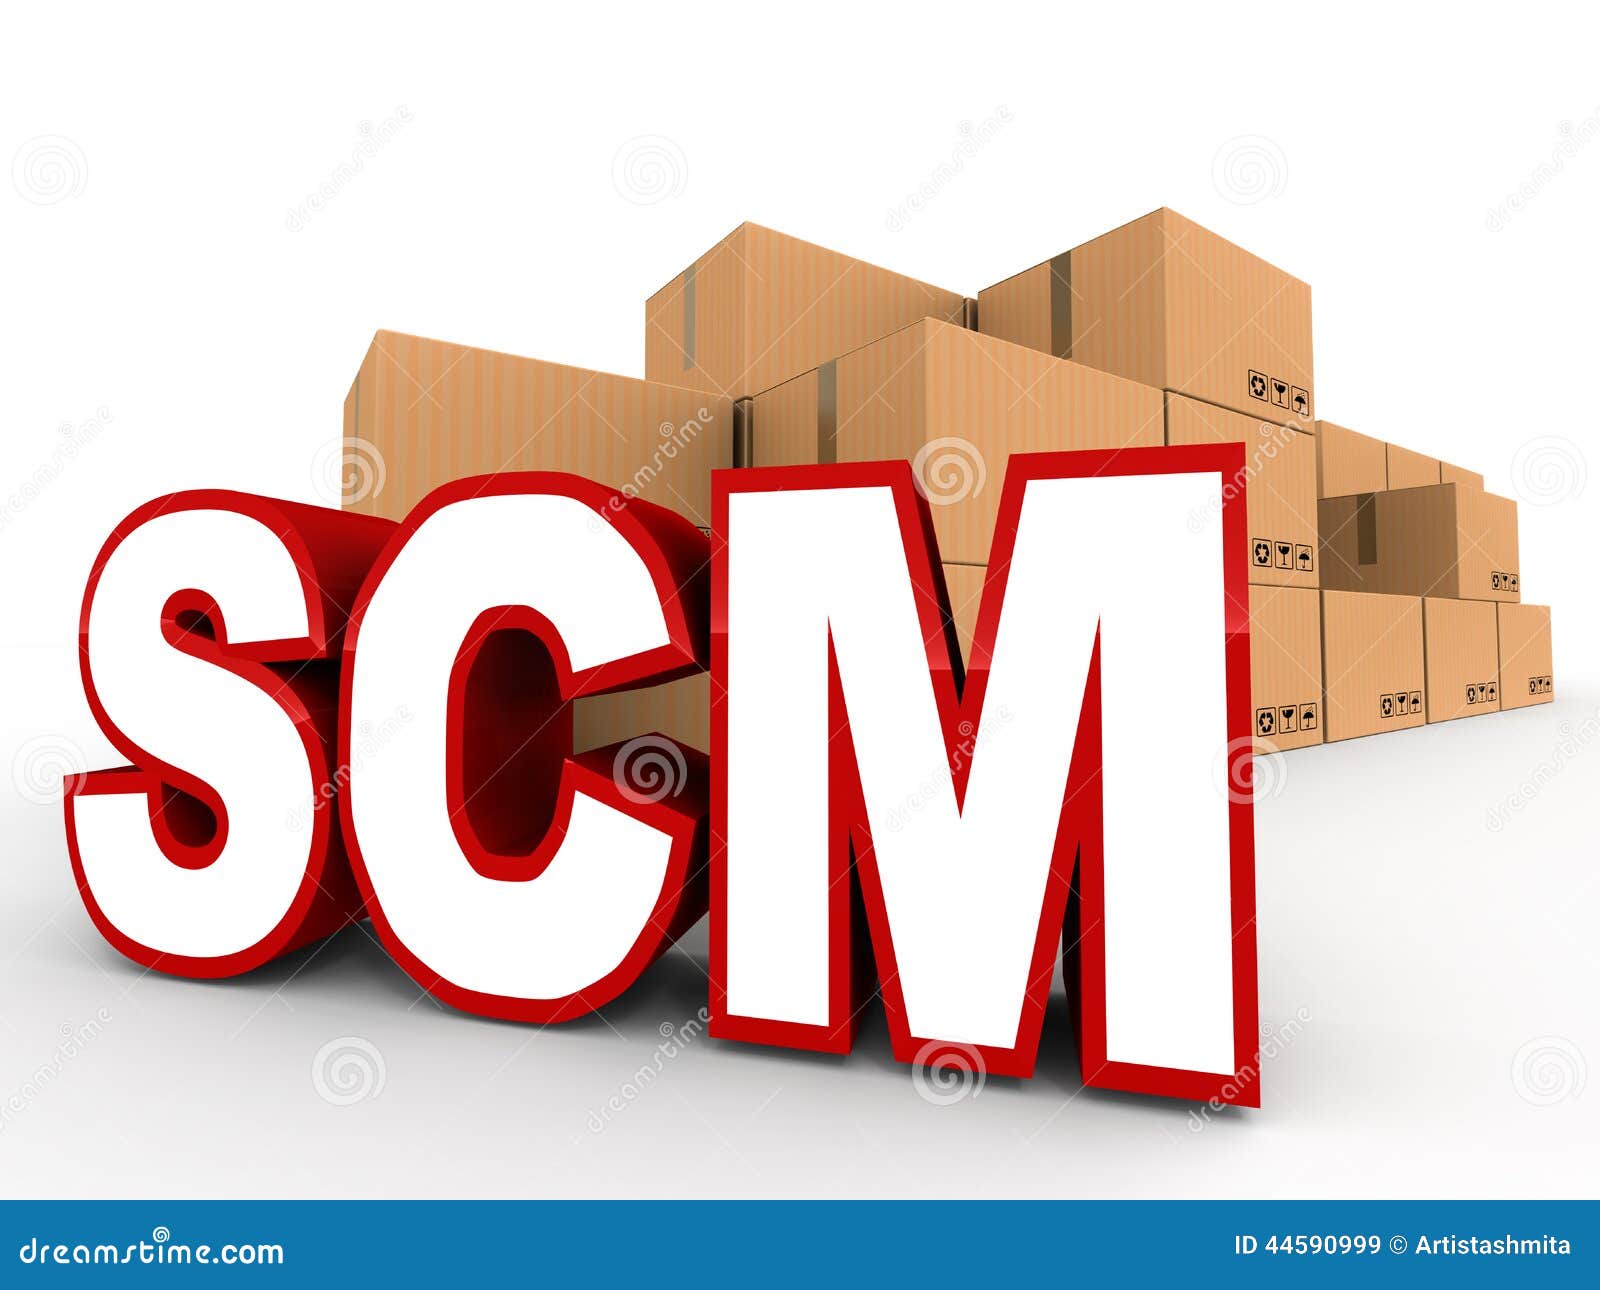 Logistics scm